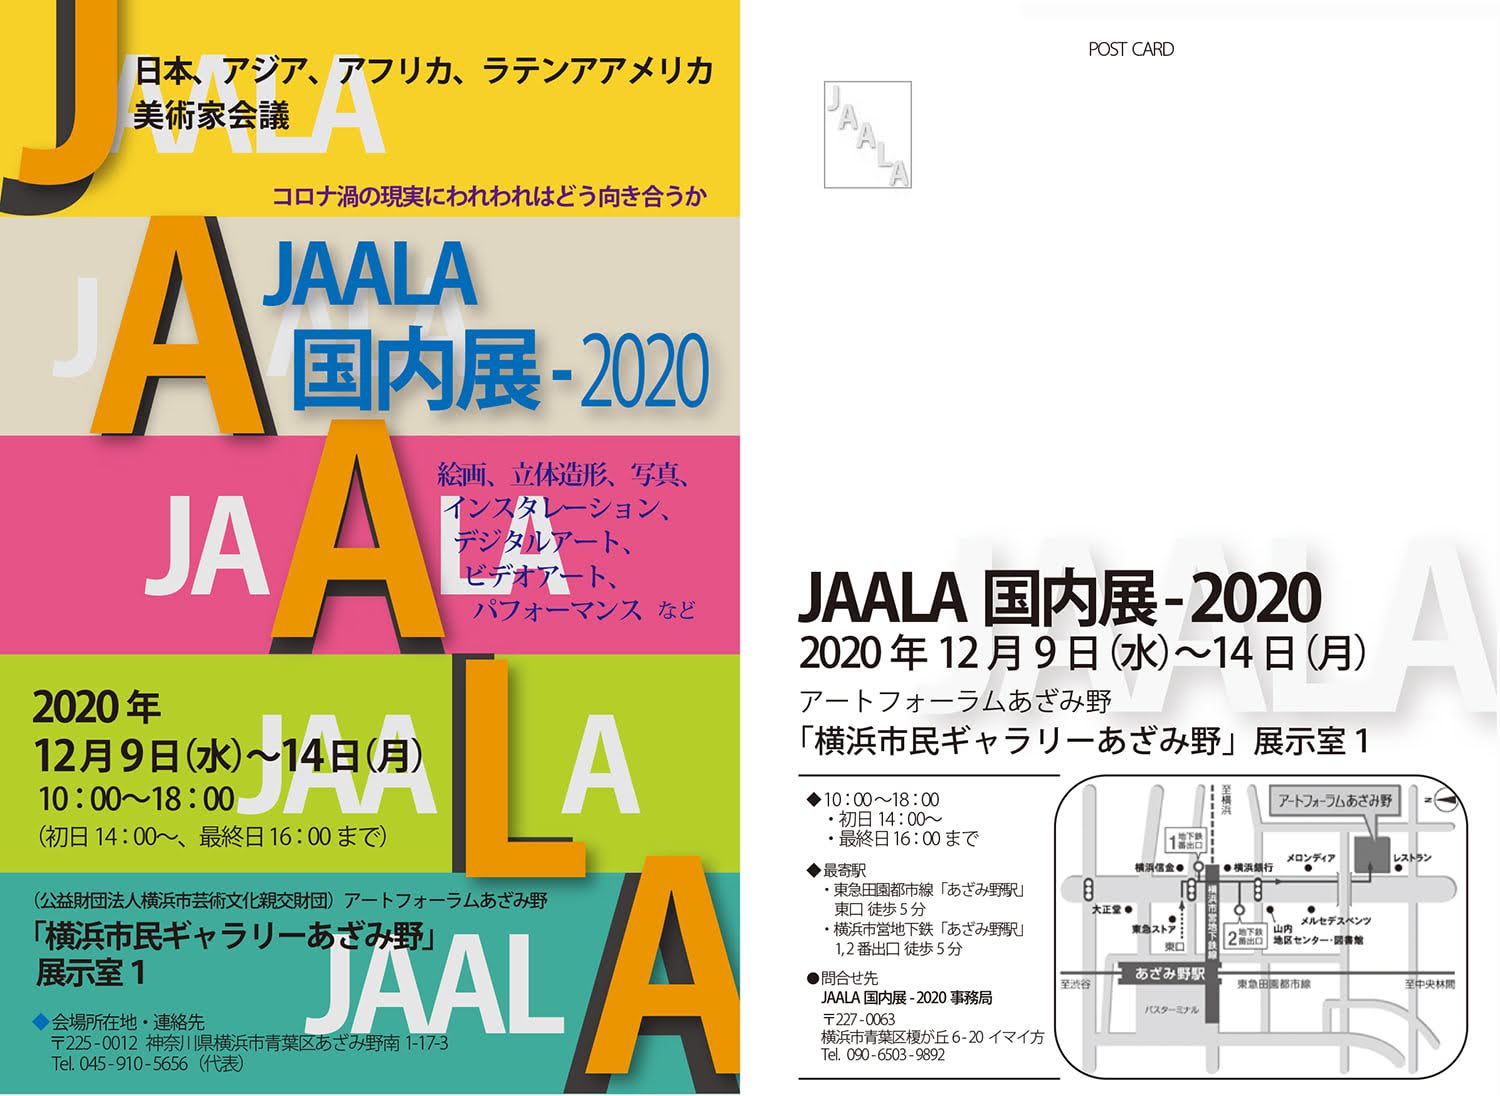 [JAALA 国内展 - 2020 コロナ渦の現実にわれわれはどう向き合うか]。伊藤 洋子 も 美術展示。2020/12/09 Wed - 2020/12/14 Mon